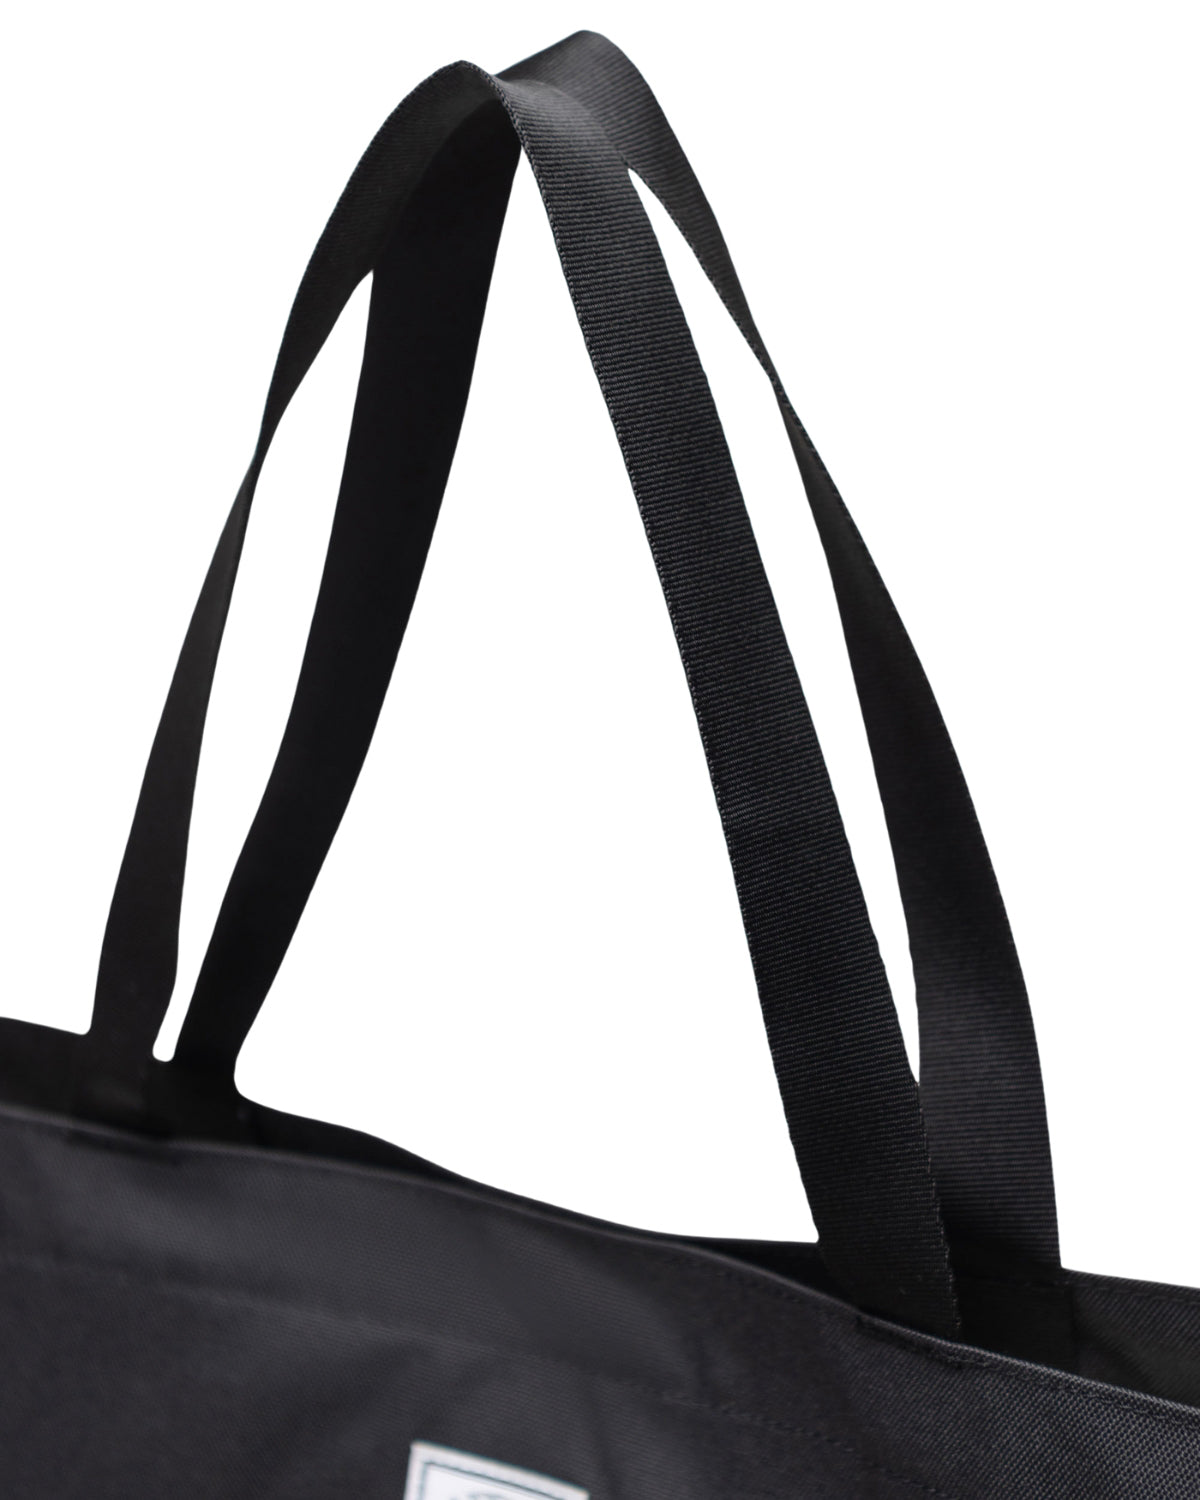 Herschel Classic Tote Bag - Black – thebackpacker